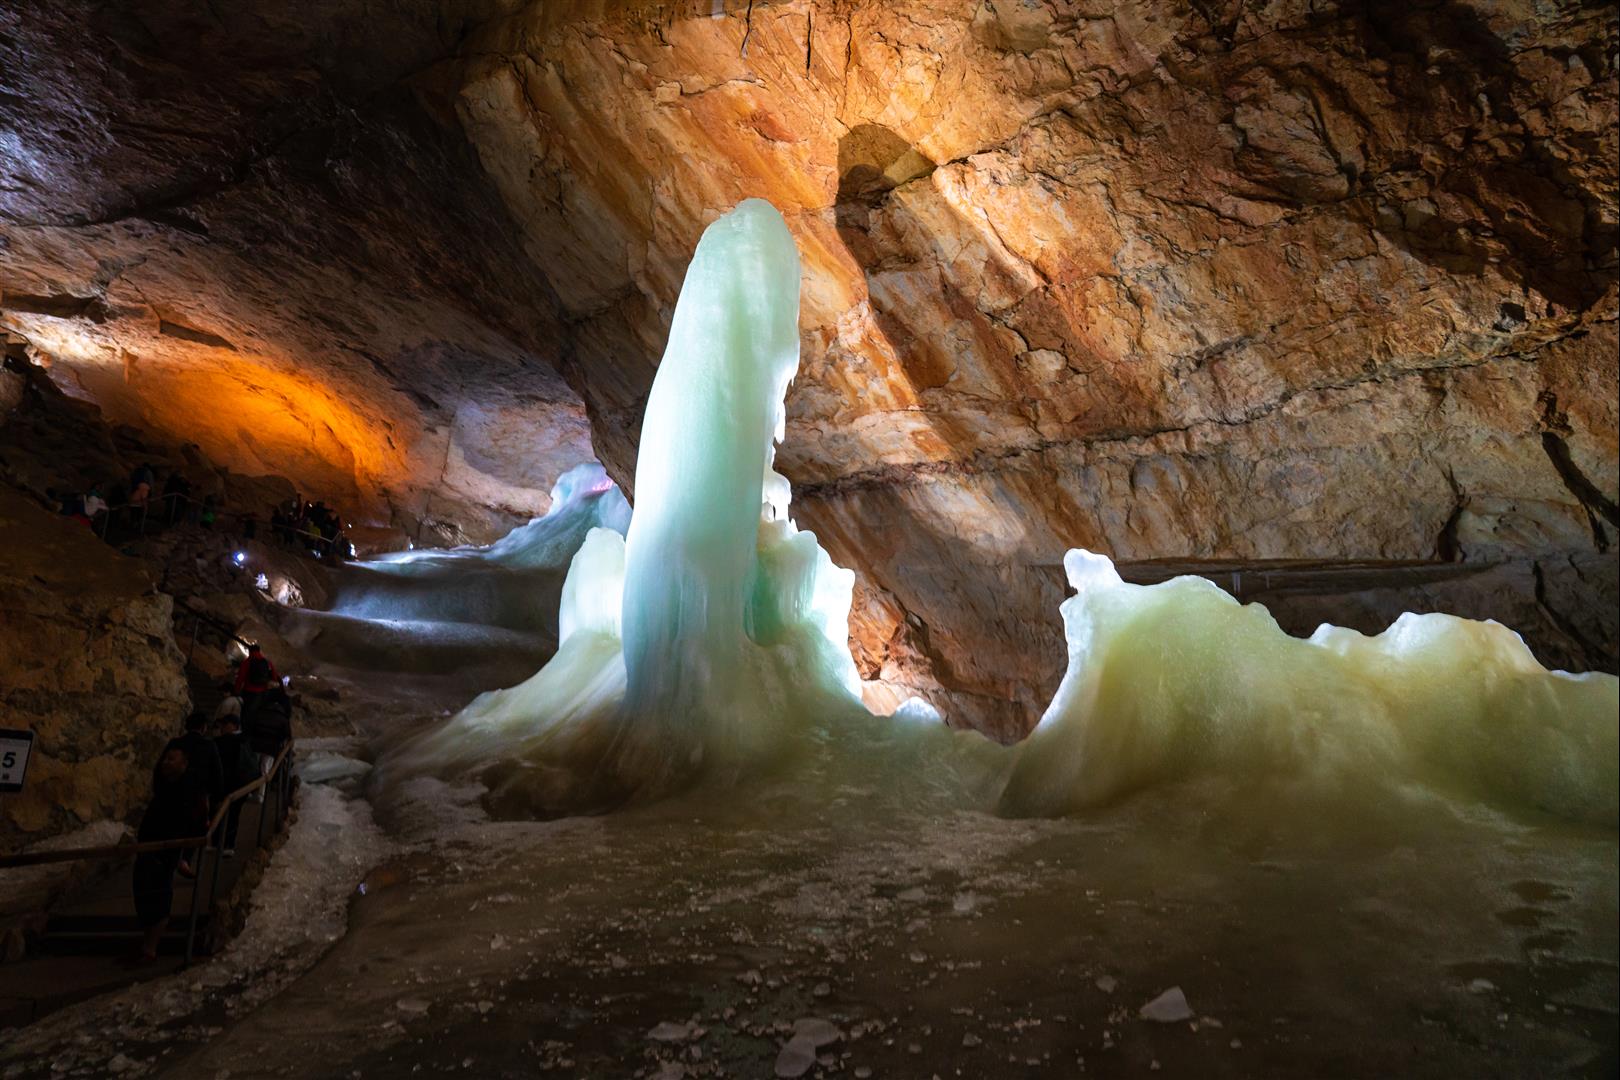 [奧地利/哈斯塔特] 達克斯坦冰洞 EISHOHLE - 熊洞穴、冰柱光雕秀、音樂懸索橋